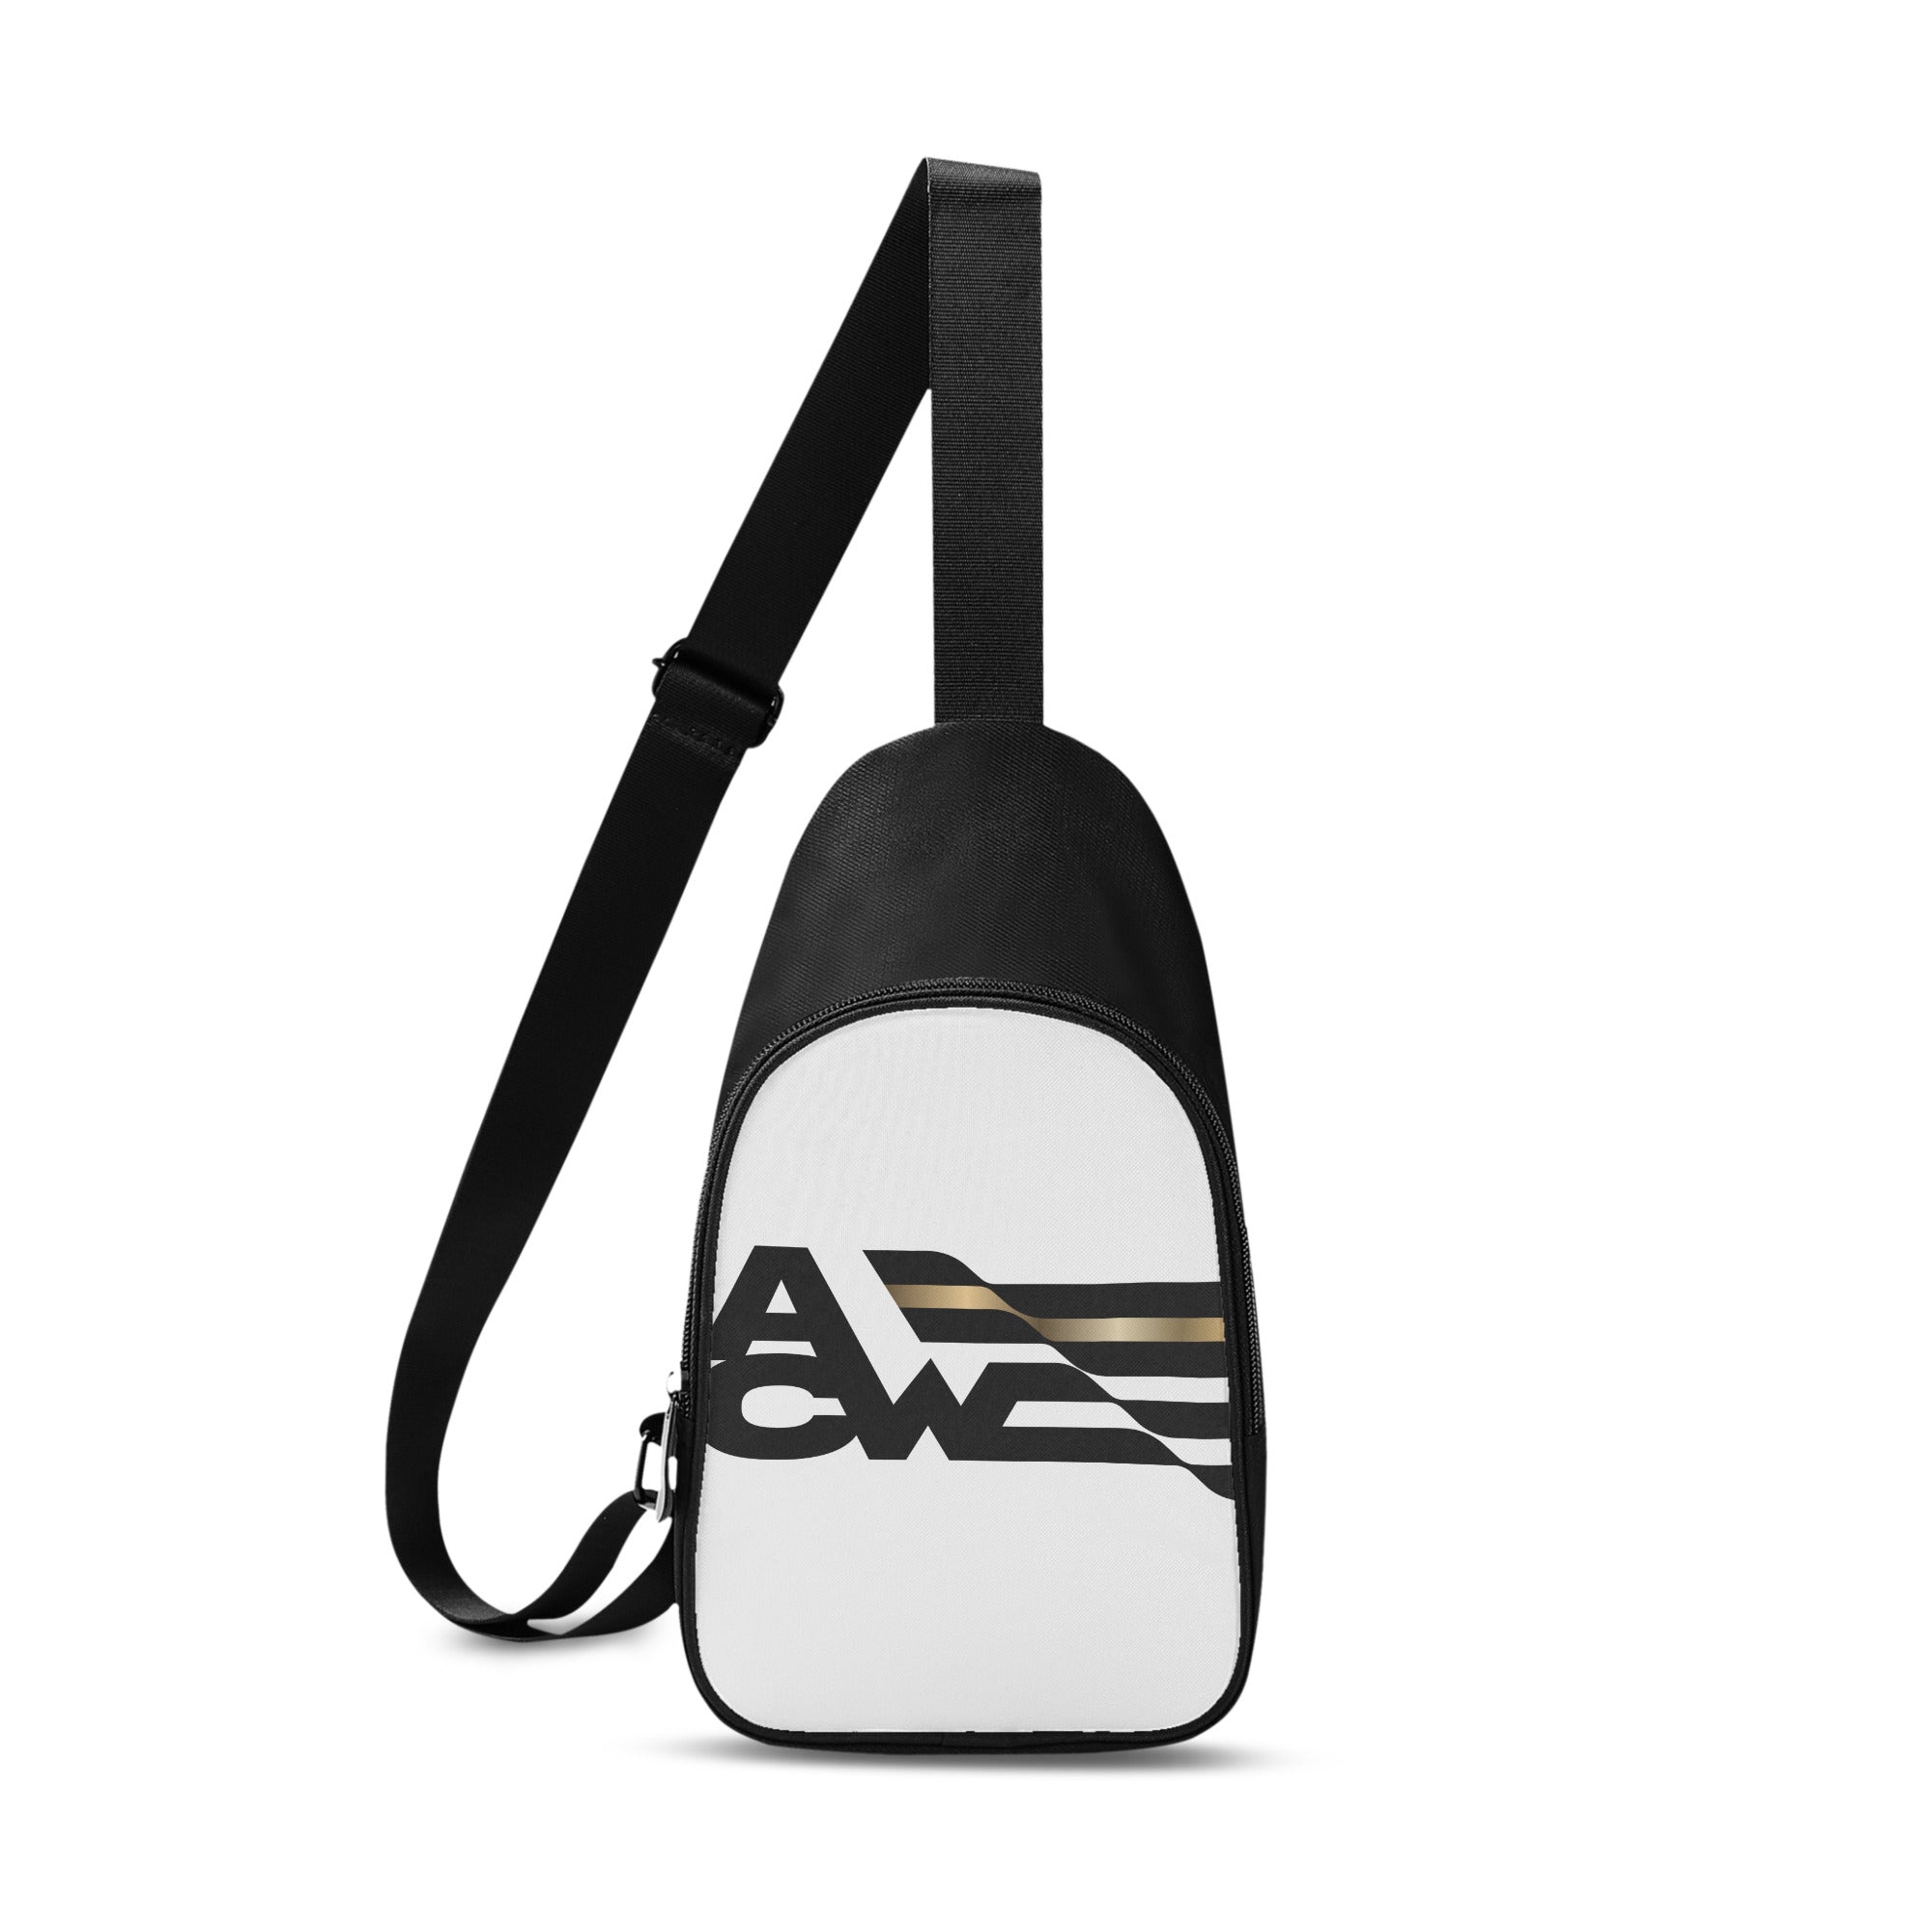 ACW Flag Cross Body Bag